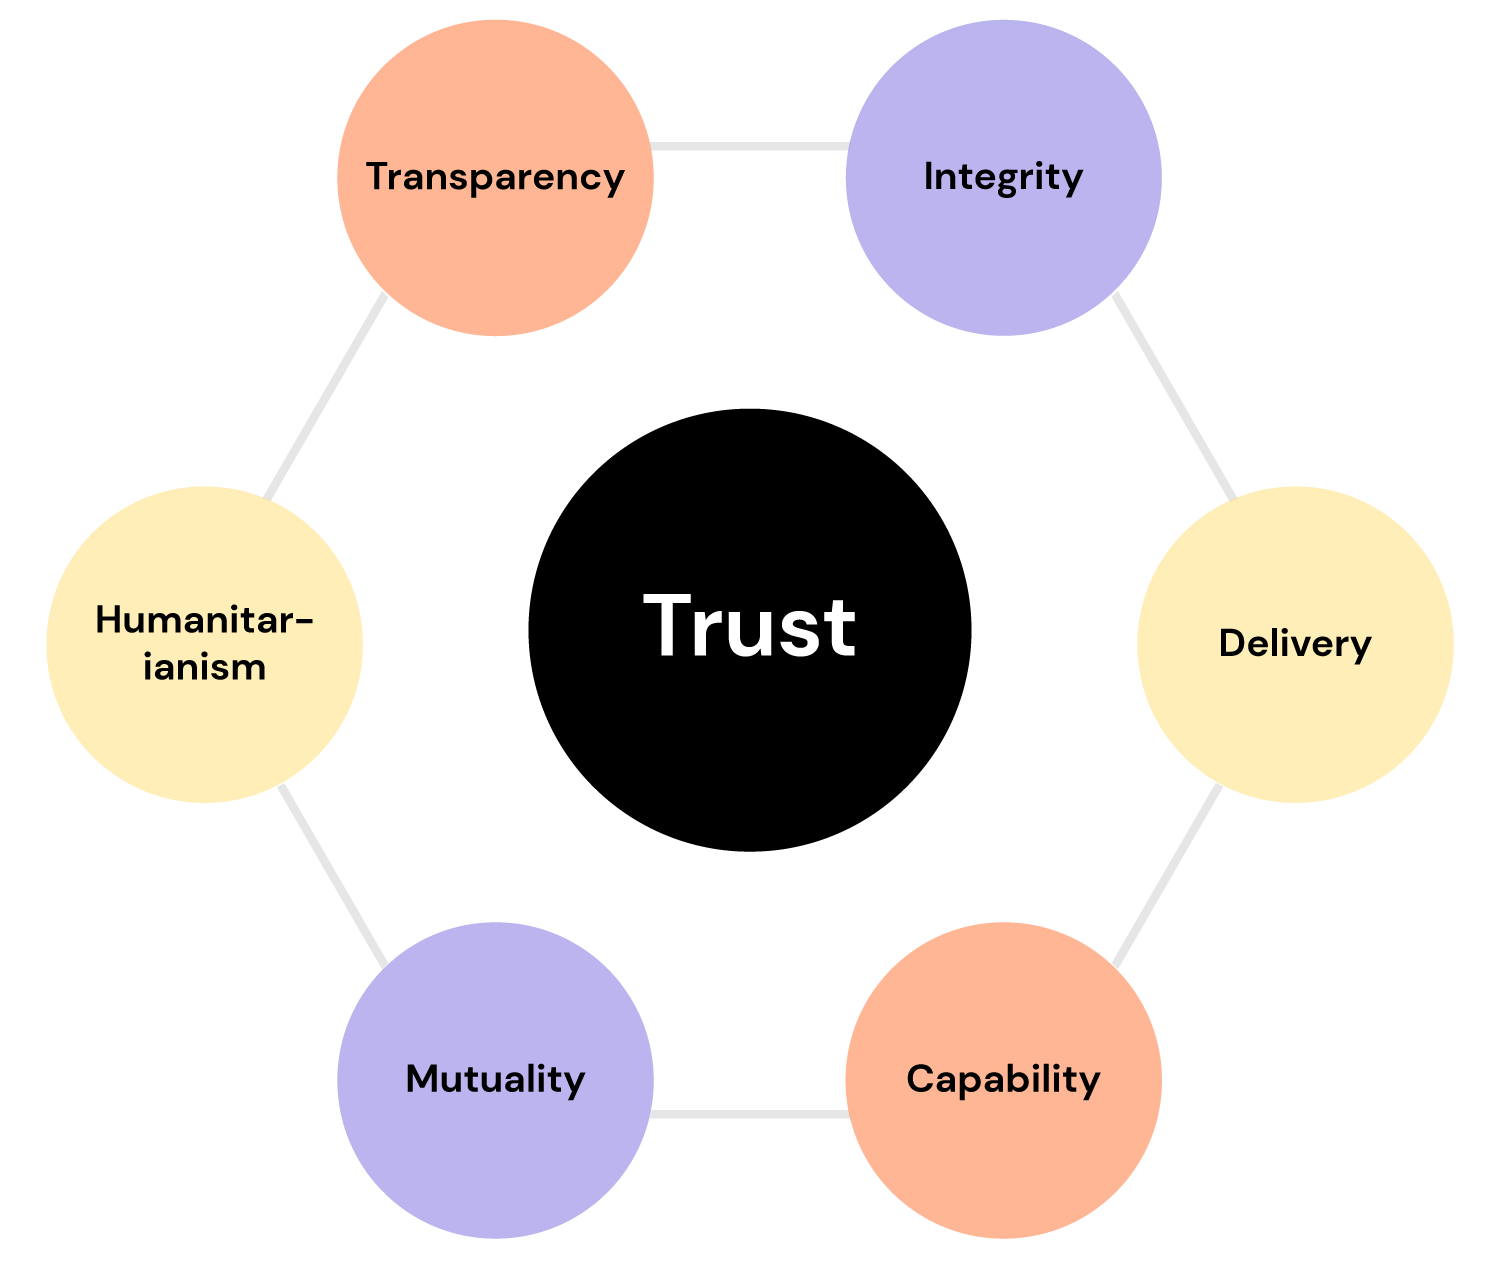 strategic management of stakeholder relationships